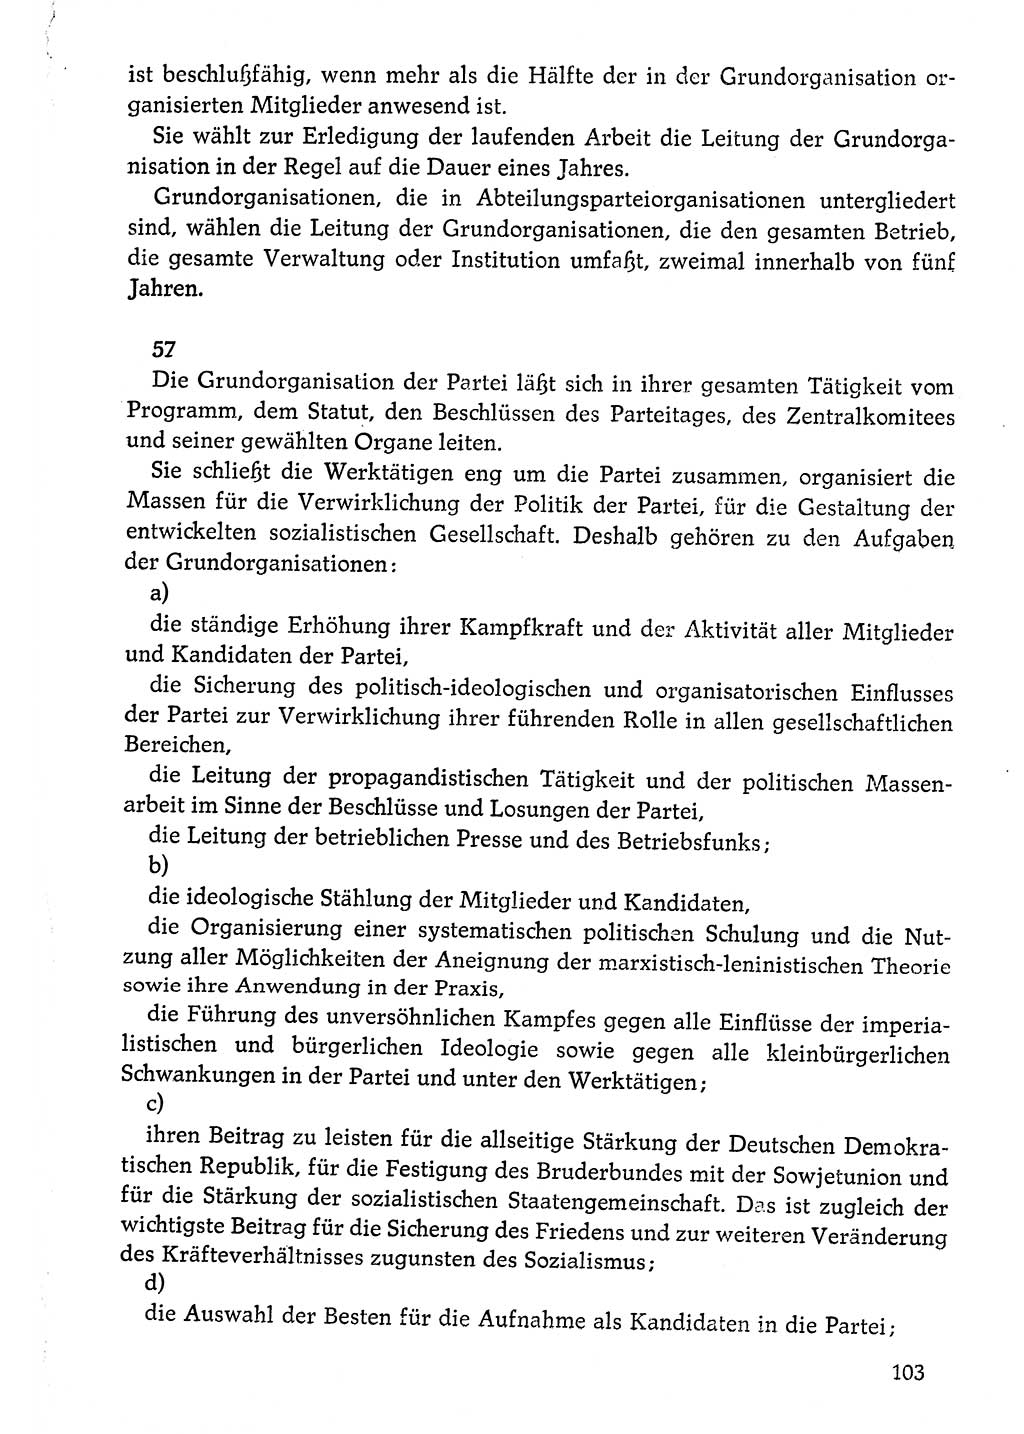 Dokumente der Sozialistischen Einheitspartei Deutschlands (SED) [Deutsche Demokratische Republik (DDR)] 1976-1977, Seite 103 (Dok. SED DDR 1976-1977, S. 103)